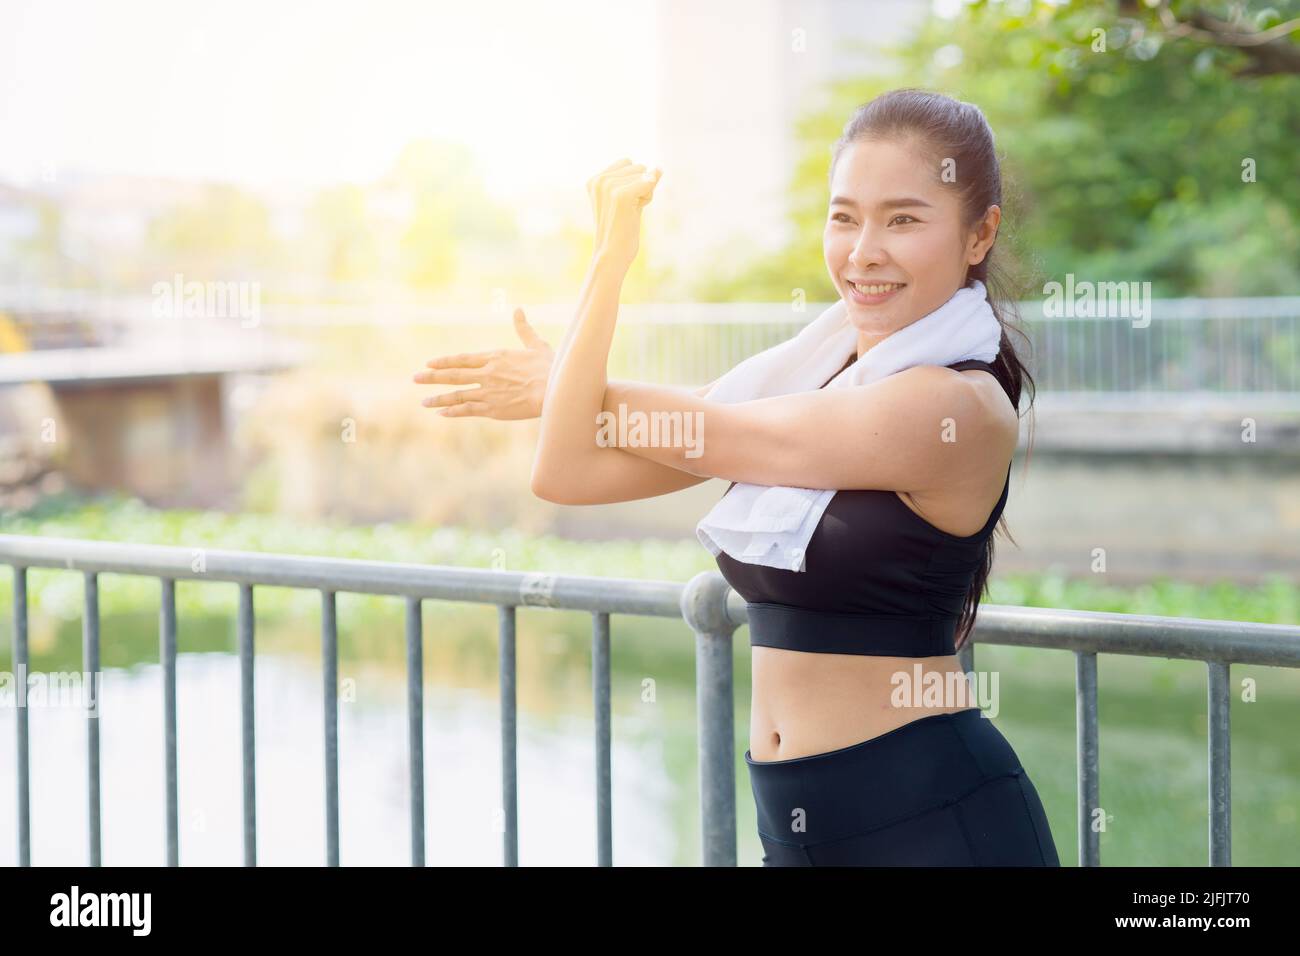 Asiatische gesunde Frau Schulter Stretching Übung im Park am Morgen im Freien Stockfoto